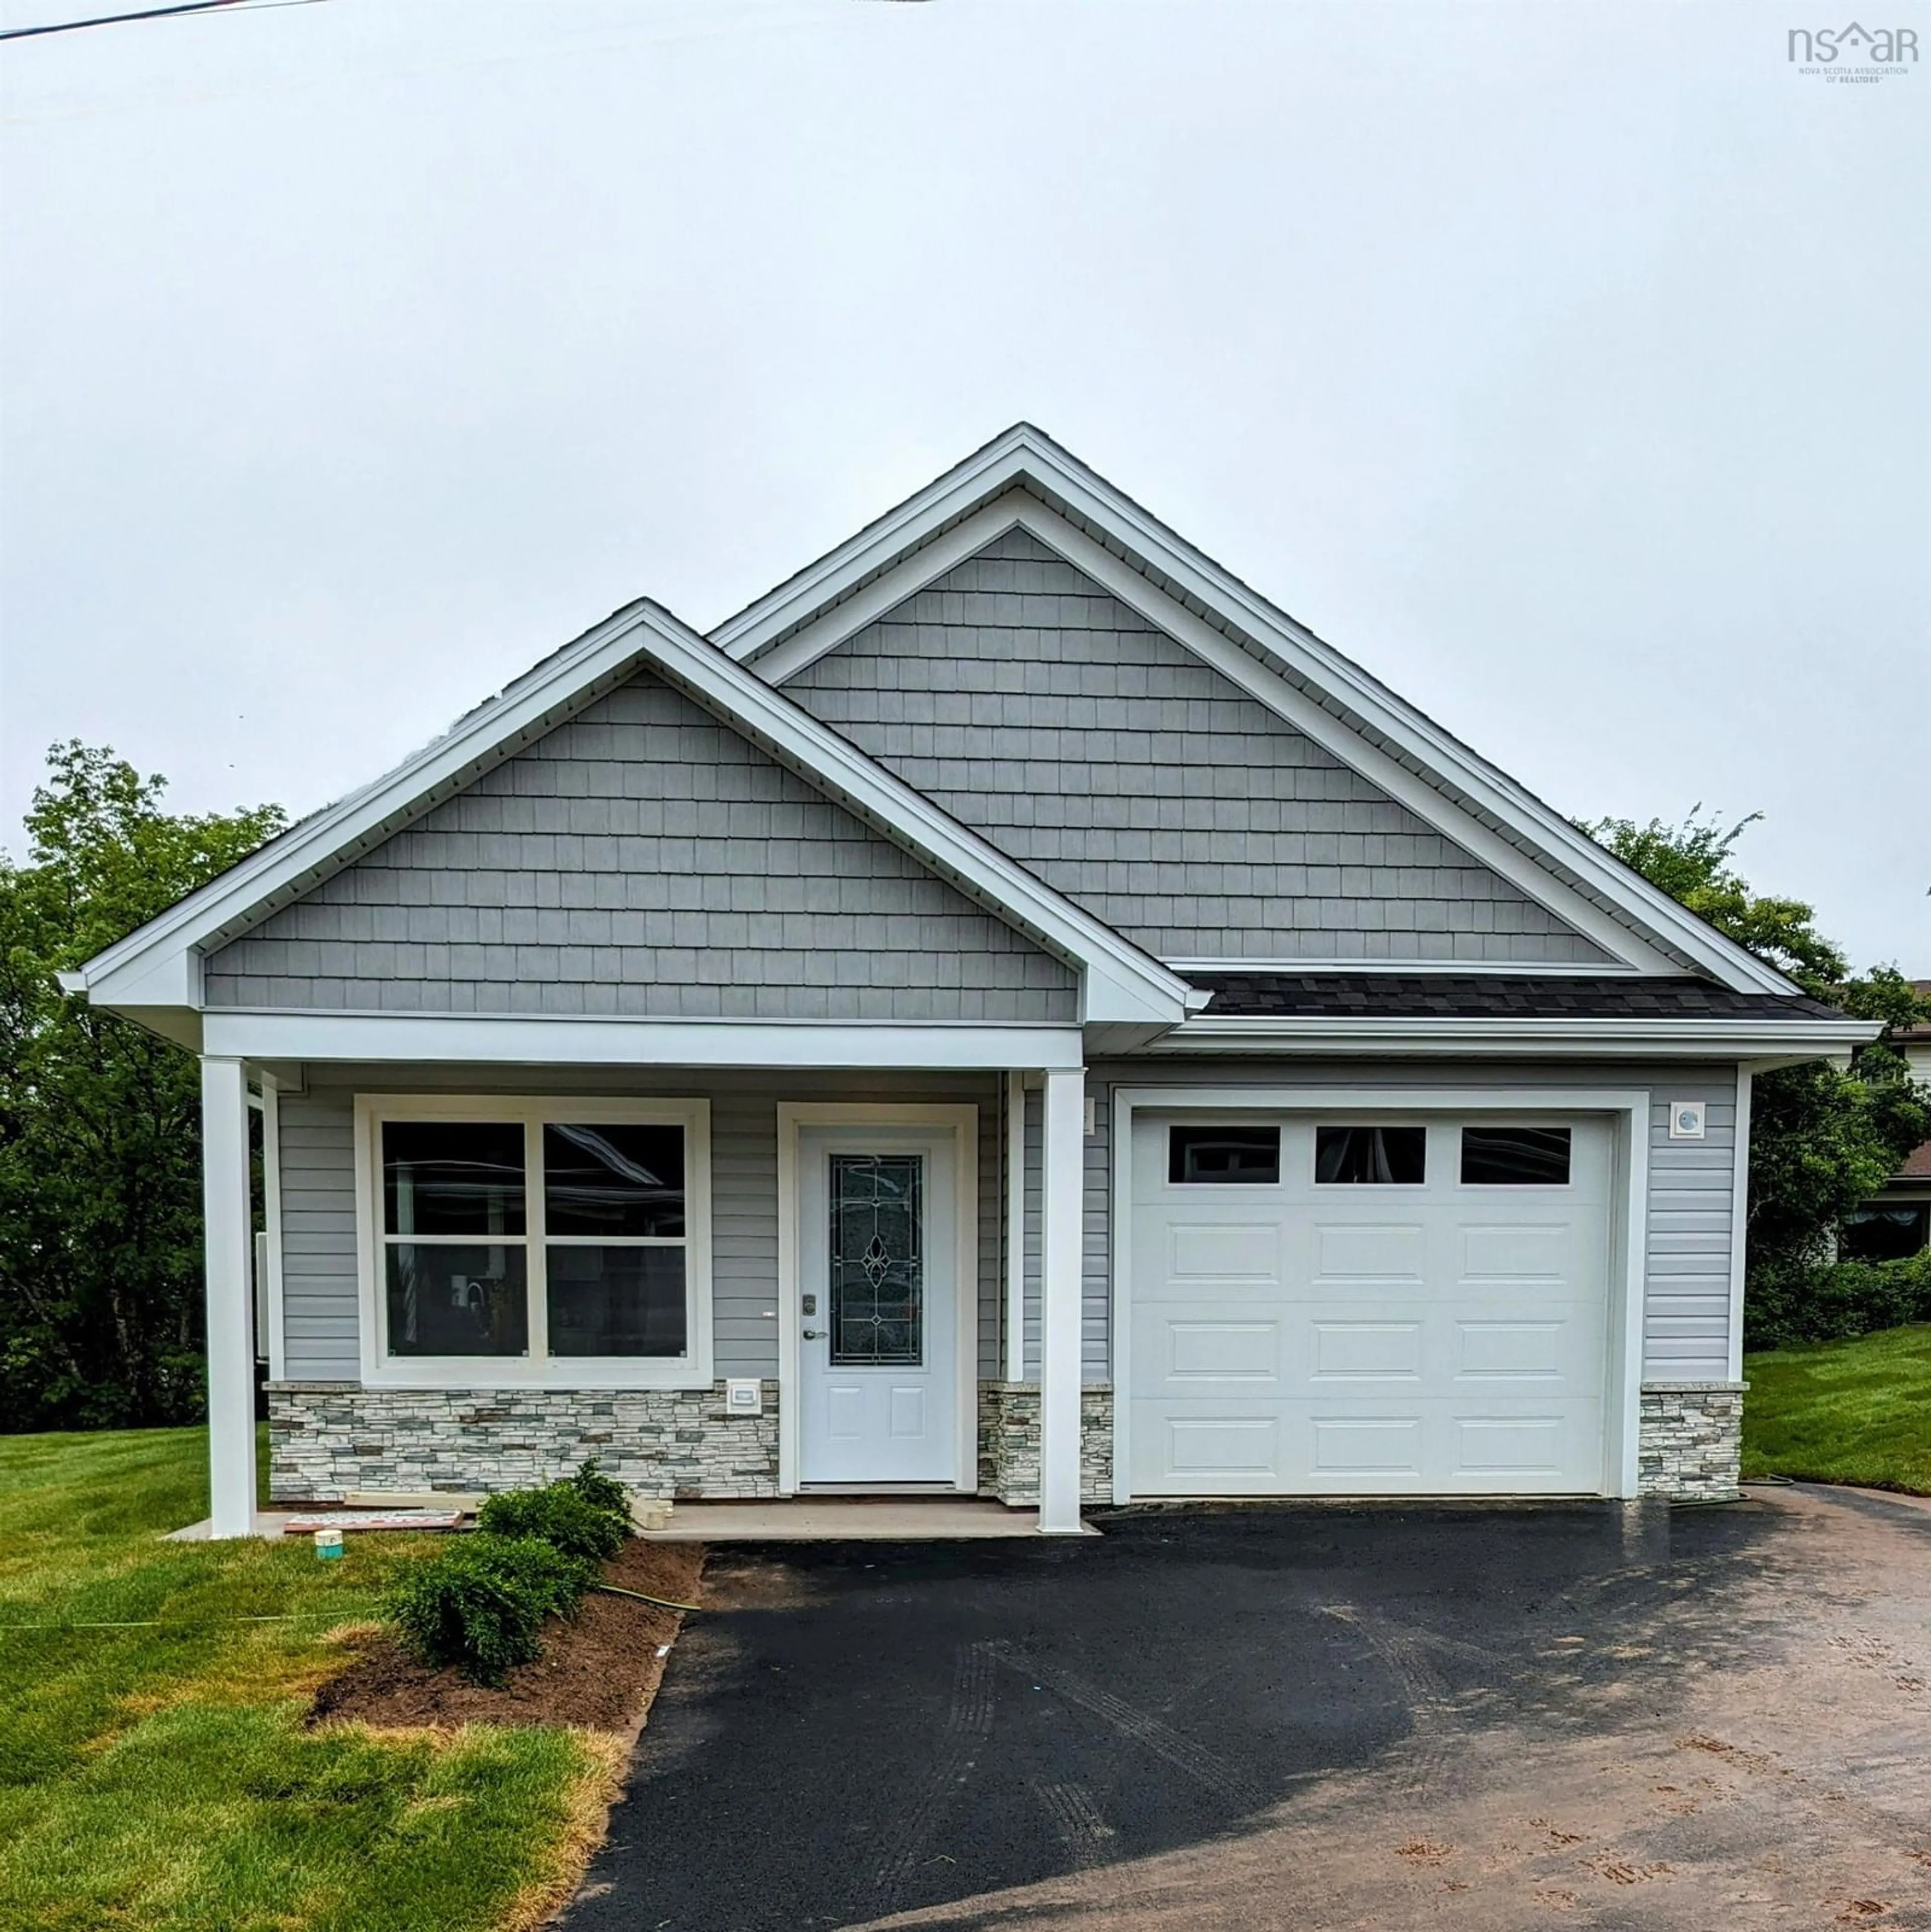 Home with stone exterior material for 19 Rubys Way, Stewiacke Nova Scotia B0J 2J0